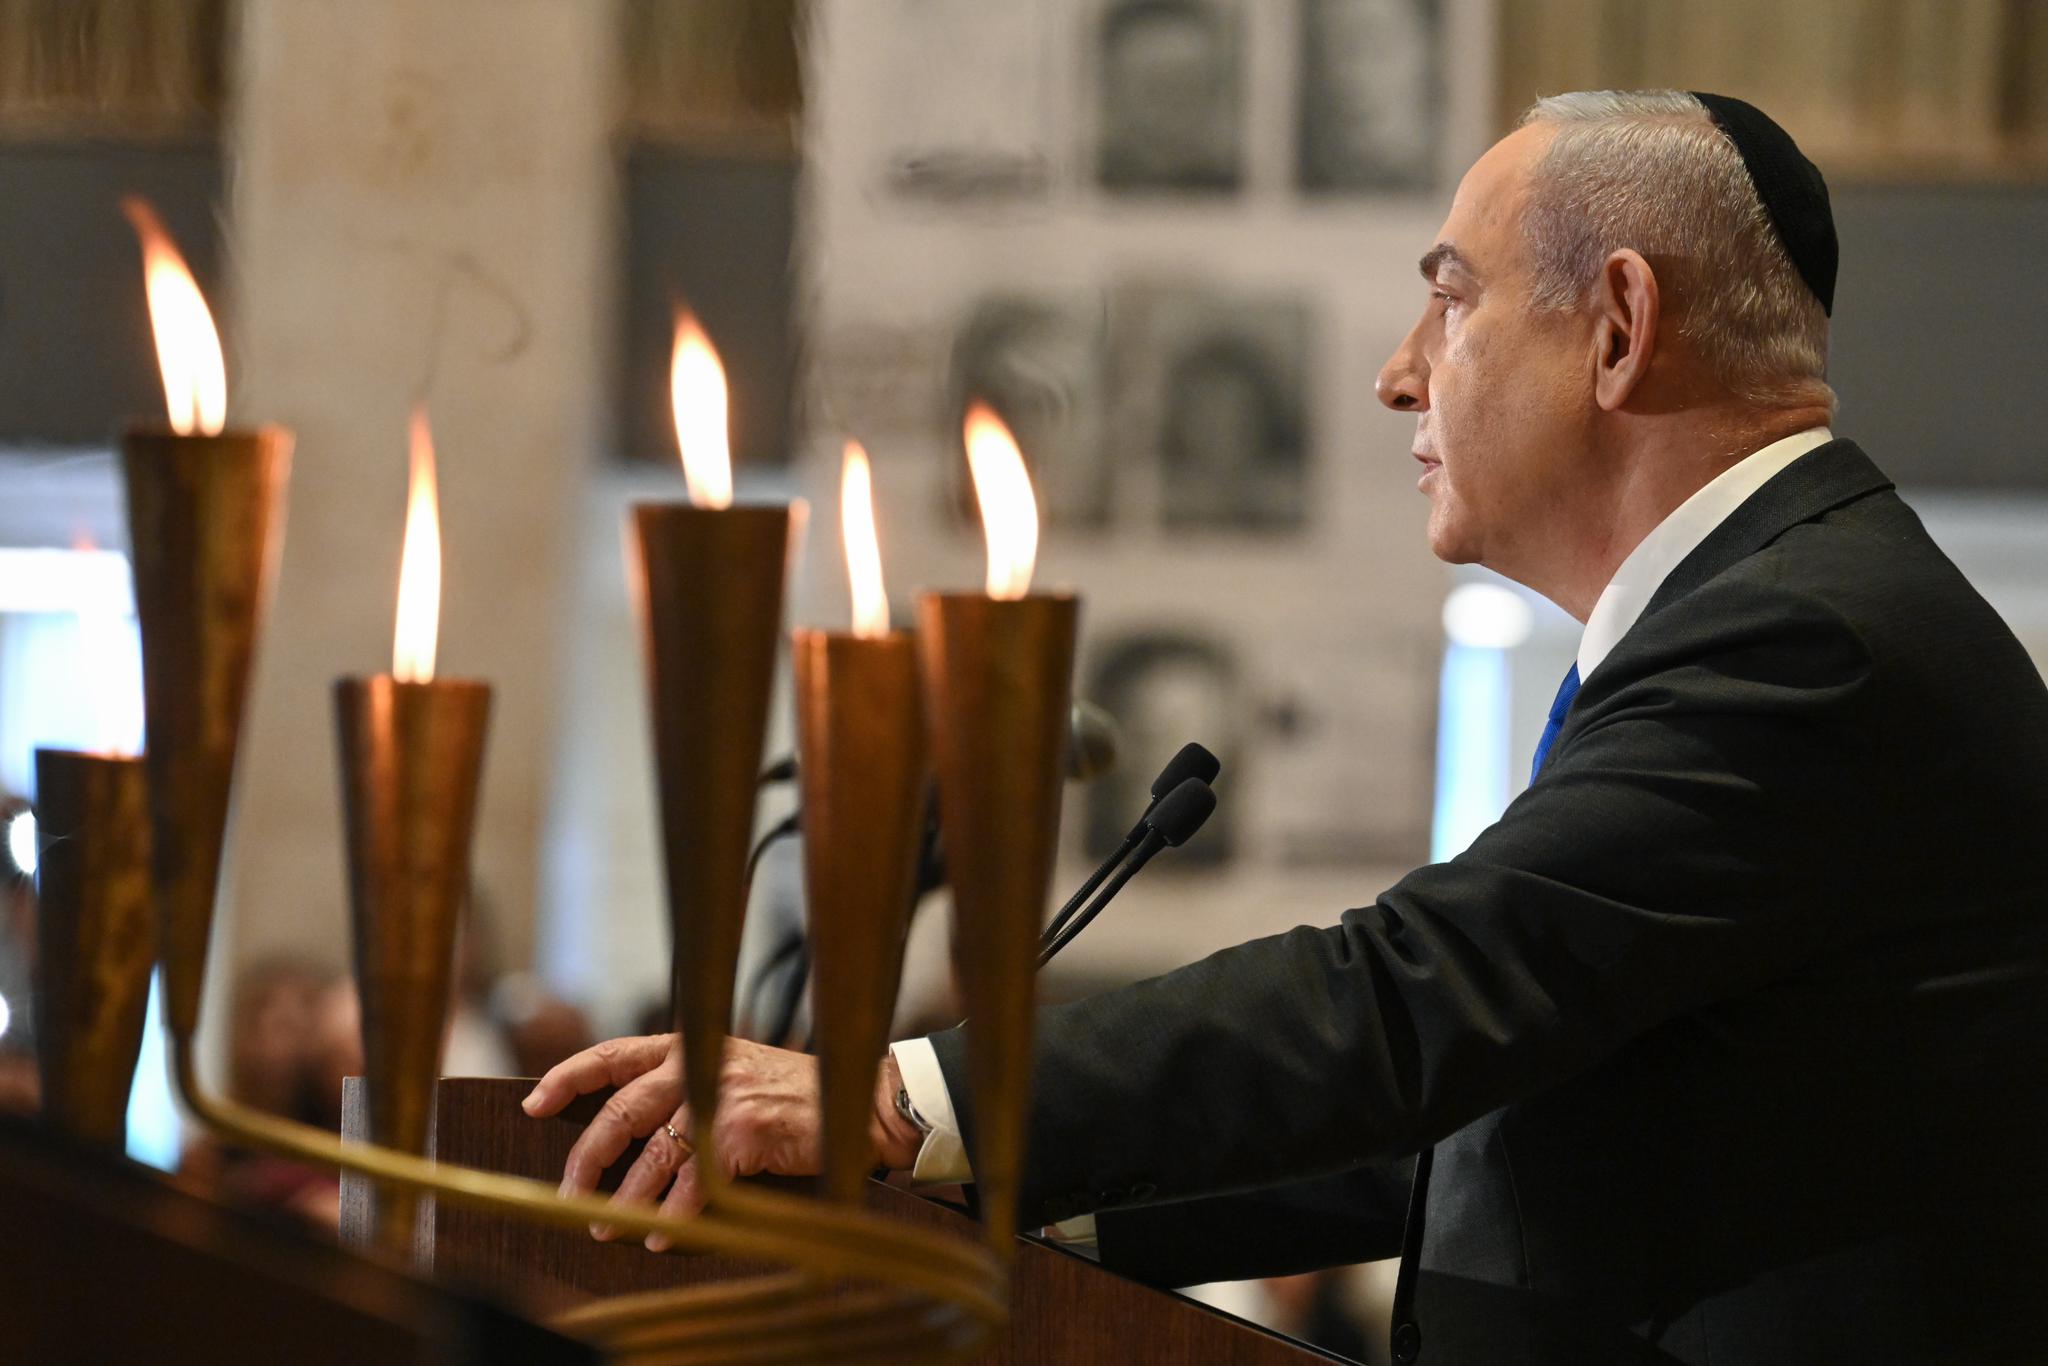 El primer ministro Benjamín Netanyahu en la ceremonia ‘Para cada persona tiene un nombre’: “La magnitud de las matanzas en el Holocausto es increíble. Ascienden a 5.000 personas del 7 de octubre”.